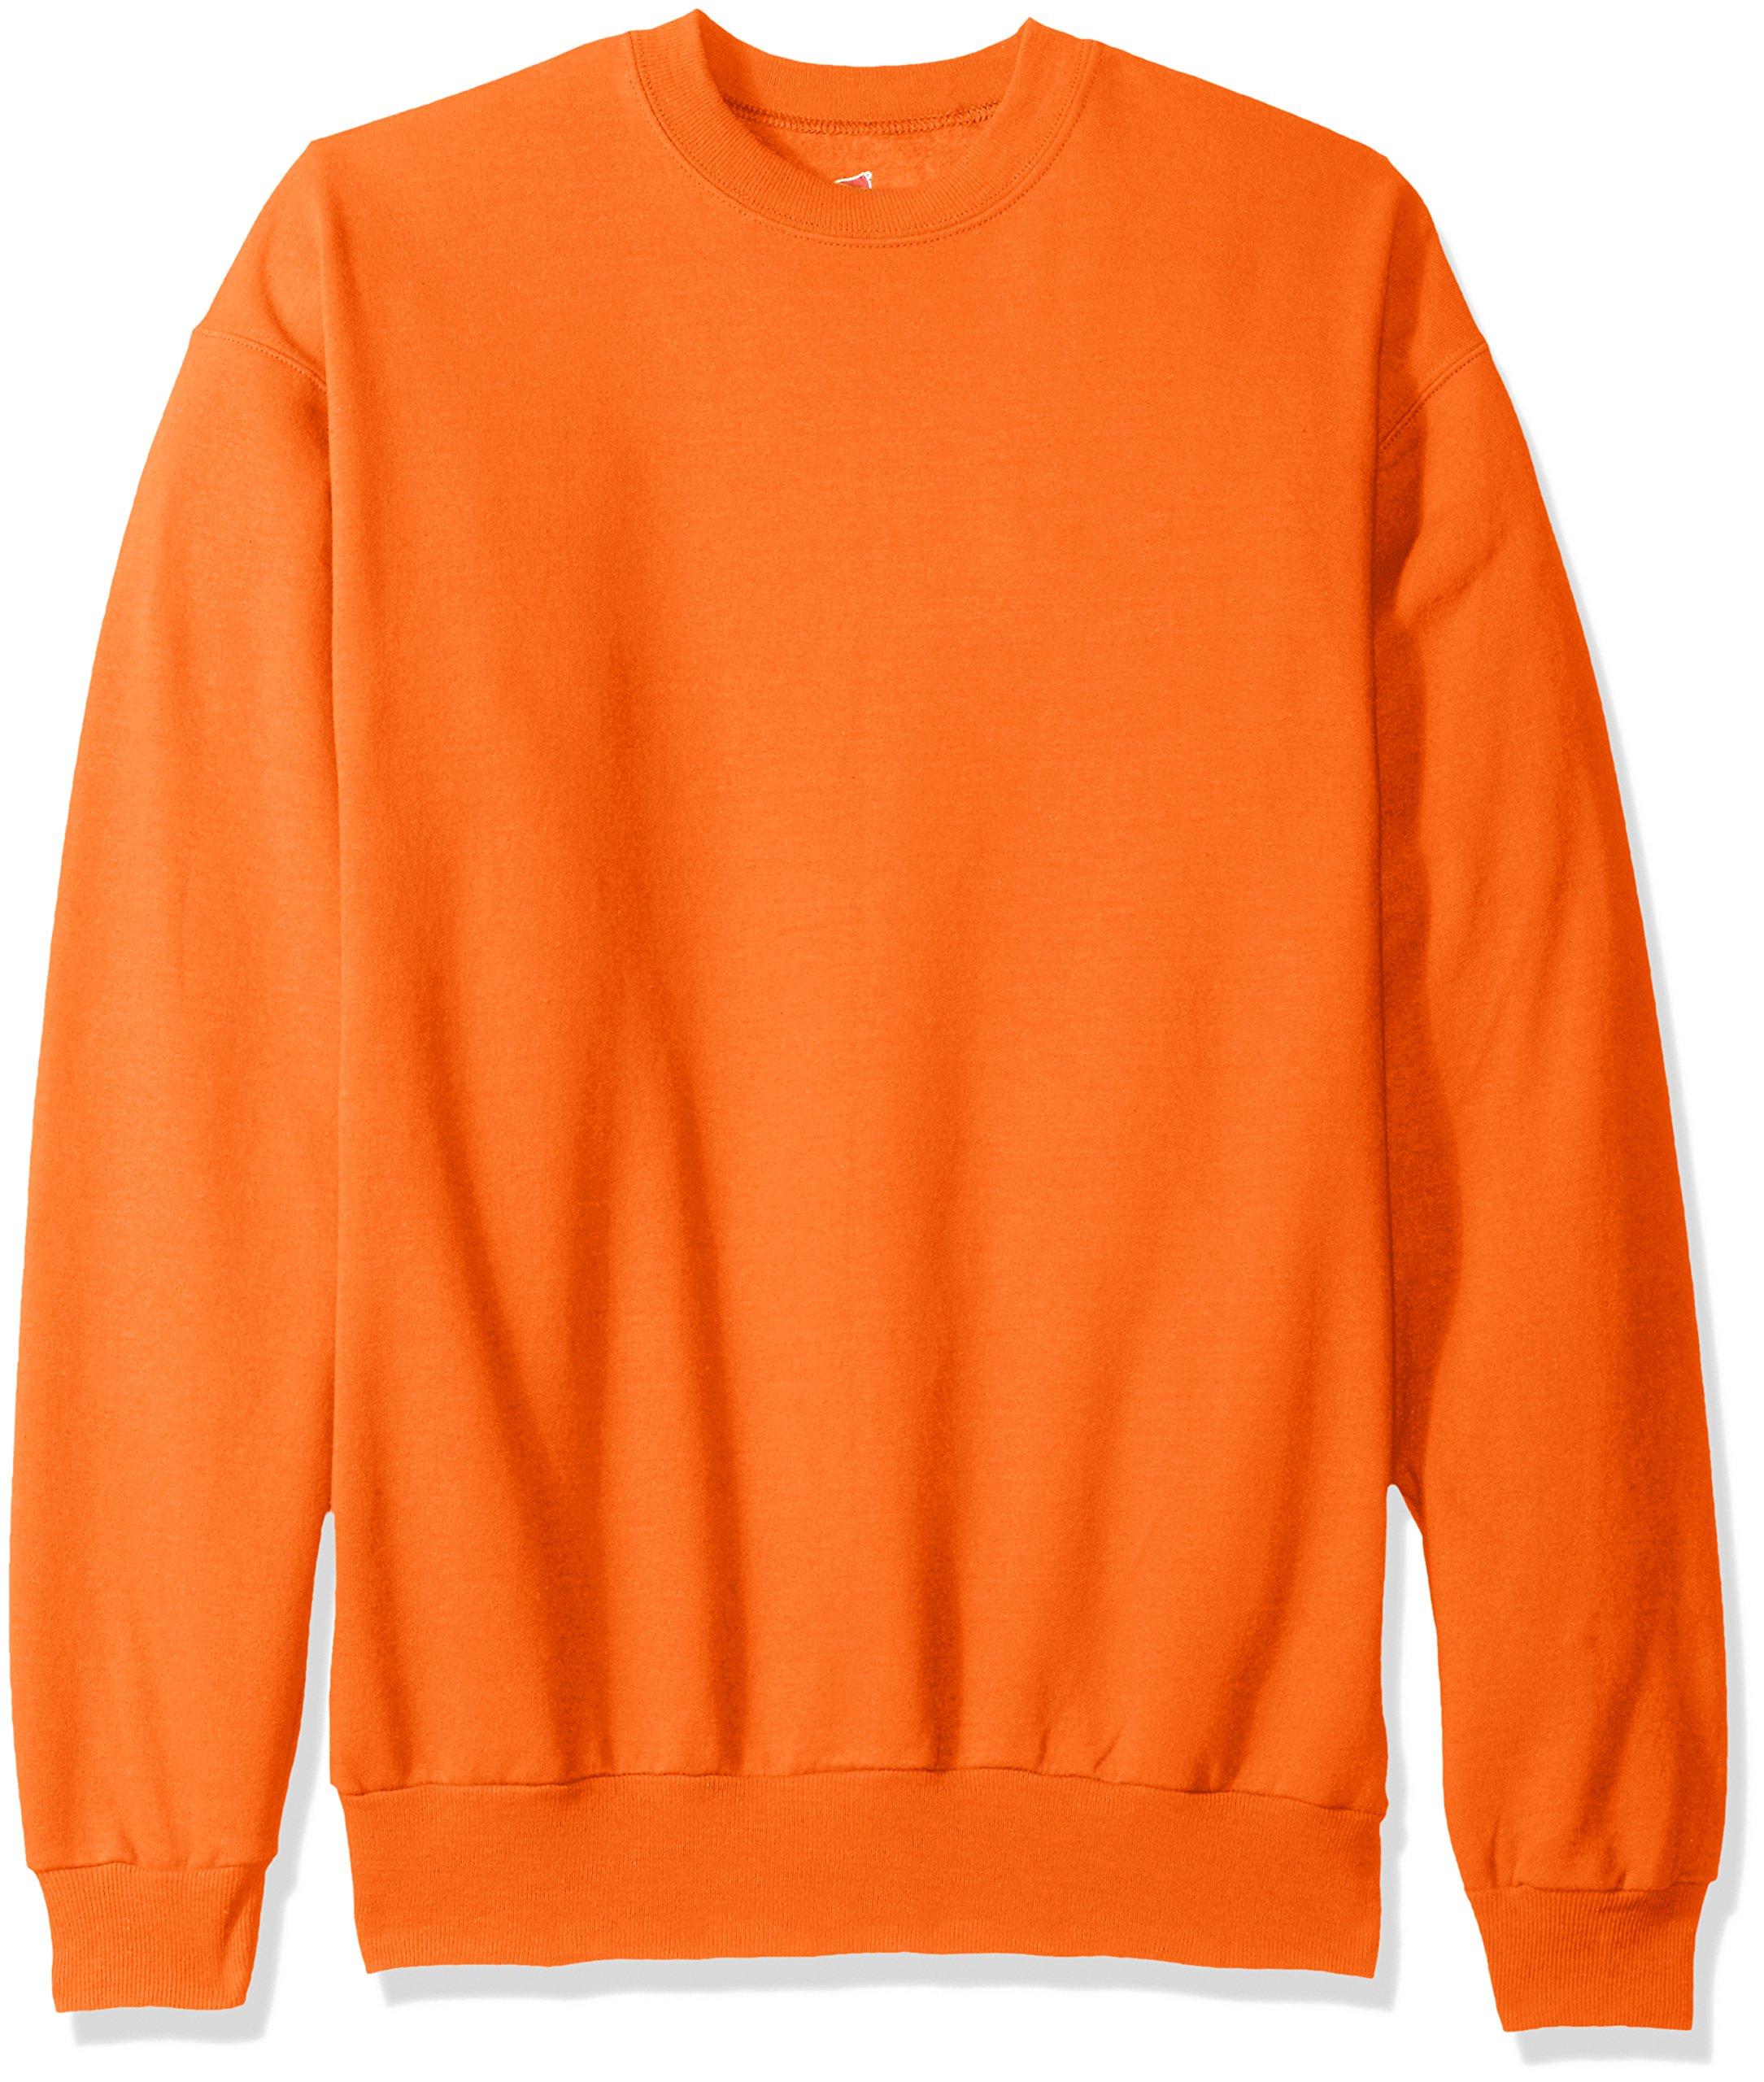 Hanes Ecosmart Fleece Sweatshirt in Orange for Men - Save 23% - Lyst